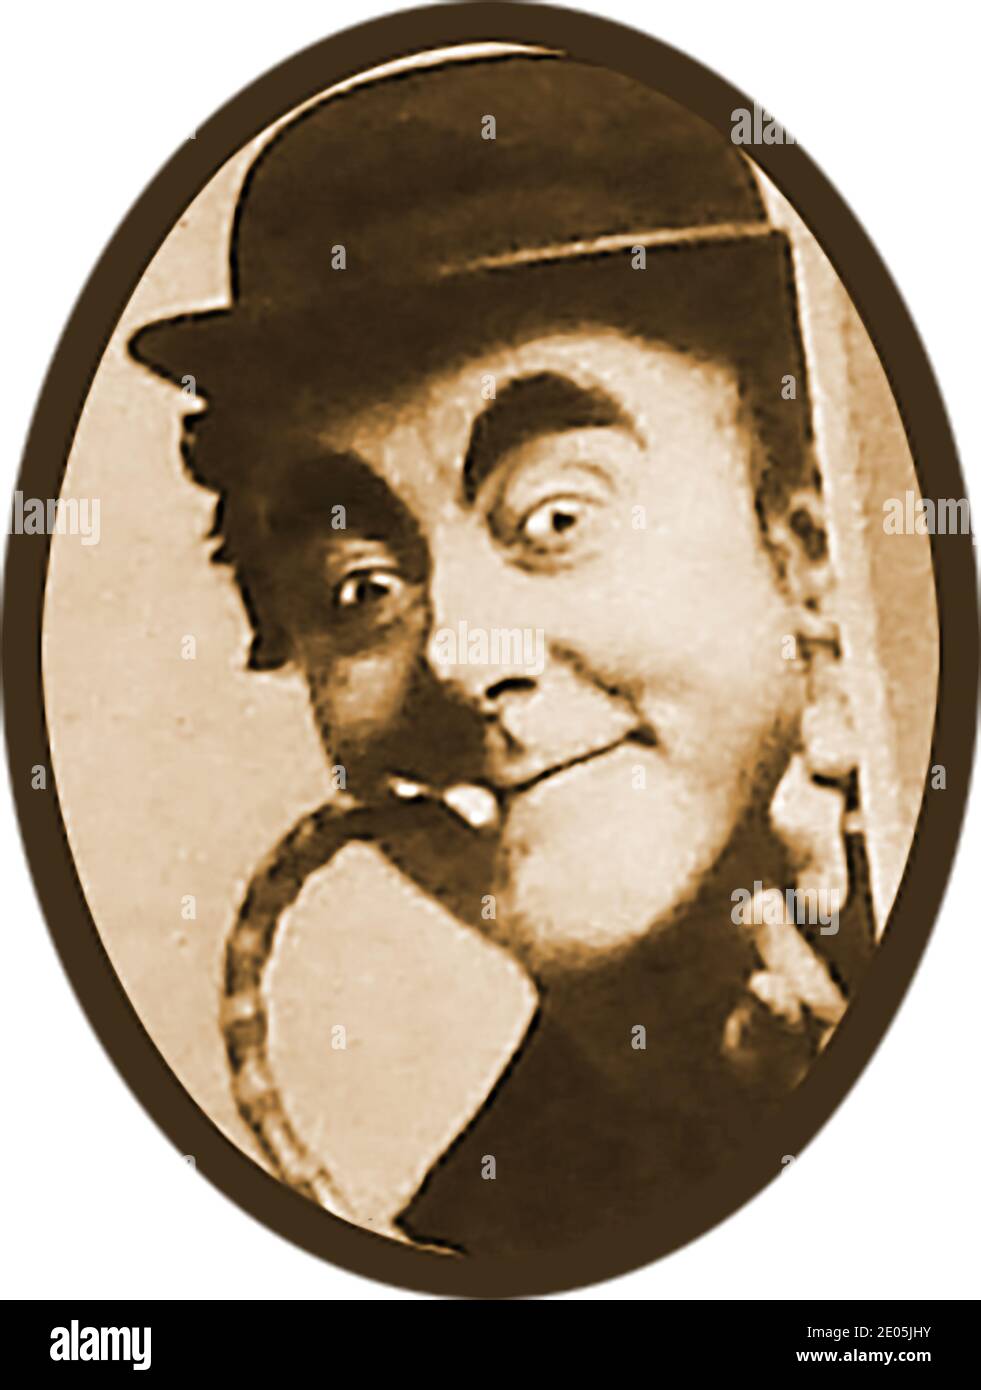 Un vieux portrait photographie de George Robey qui était connu de ses fans  comme "le Premier ministre de Mirth" se présentant à la radio . Robey, dont  le vrai nom était Sir